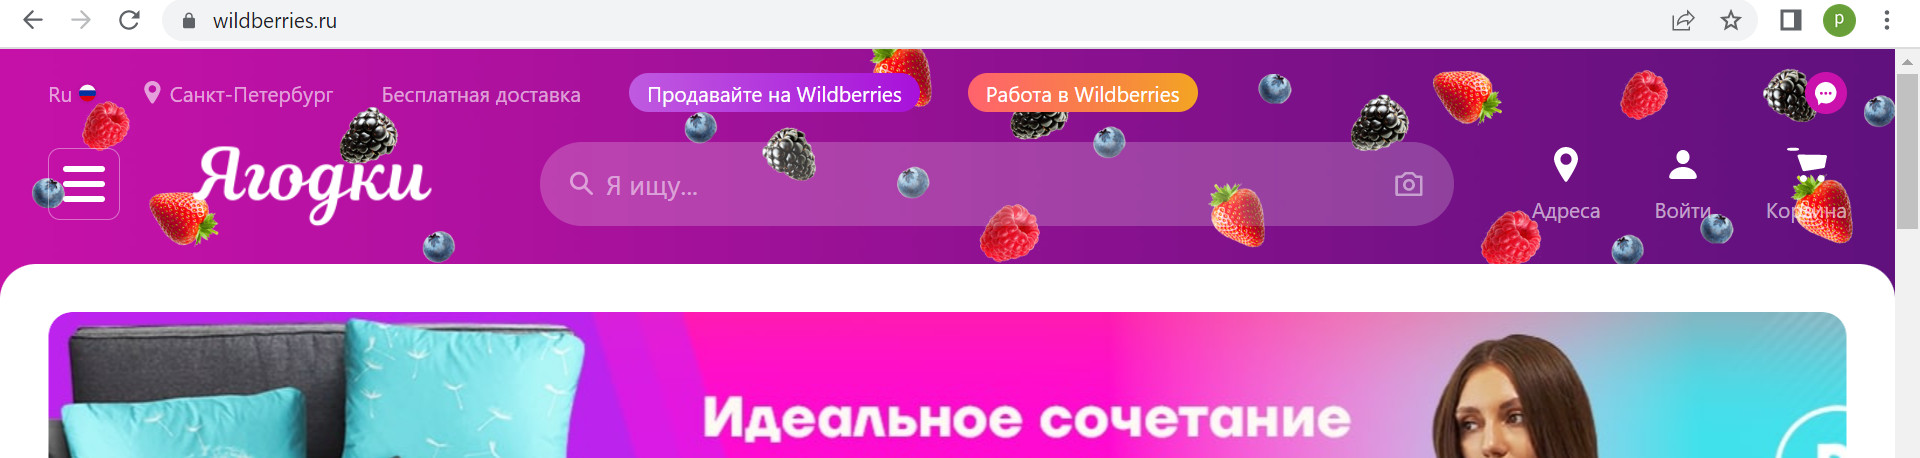 Скриншот с сайта wildberries.ru